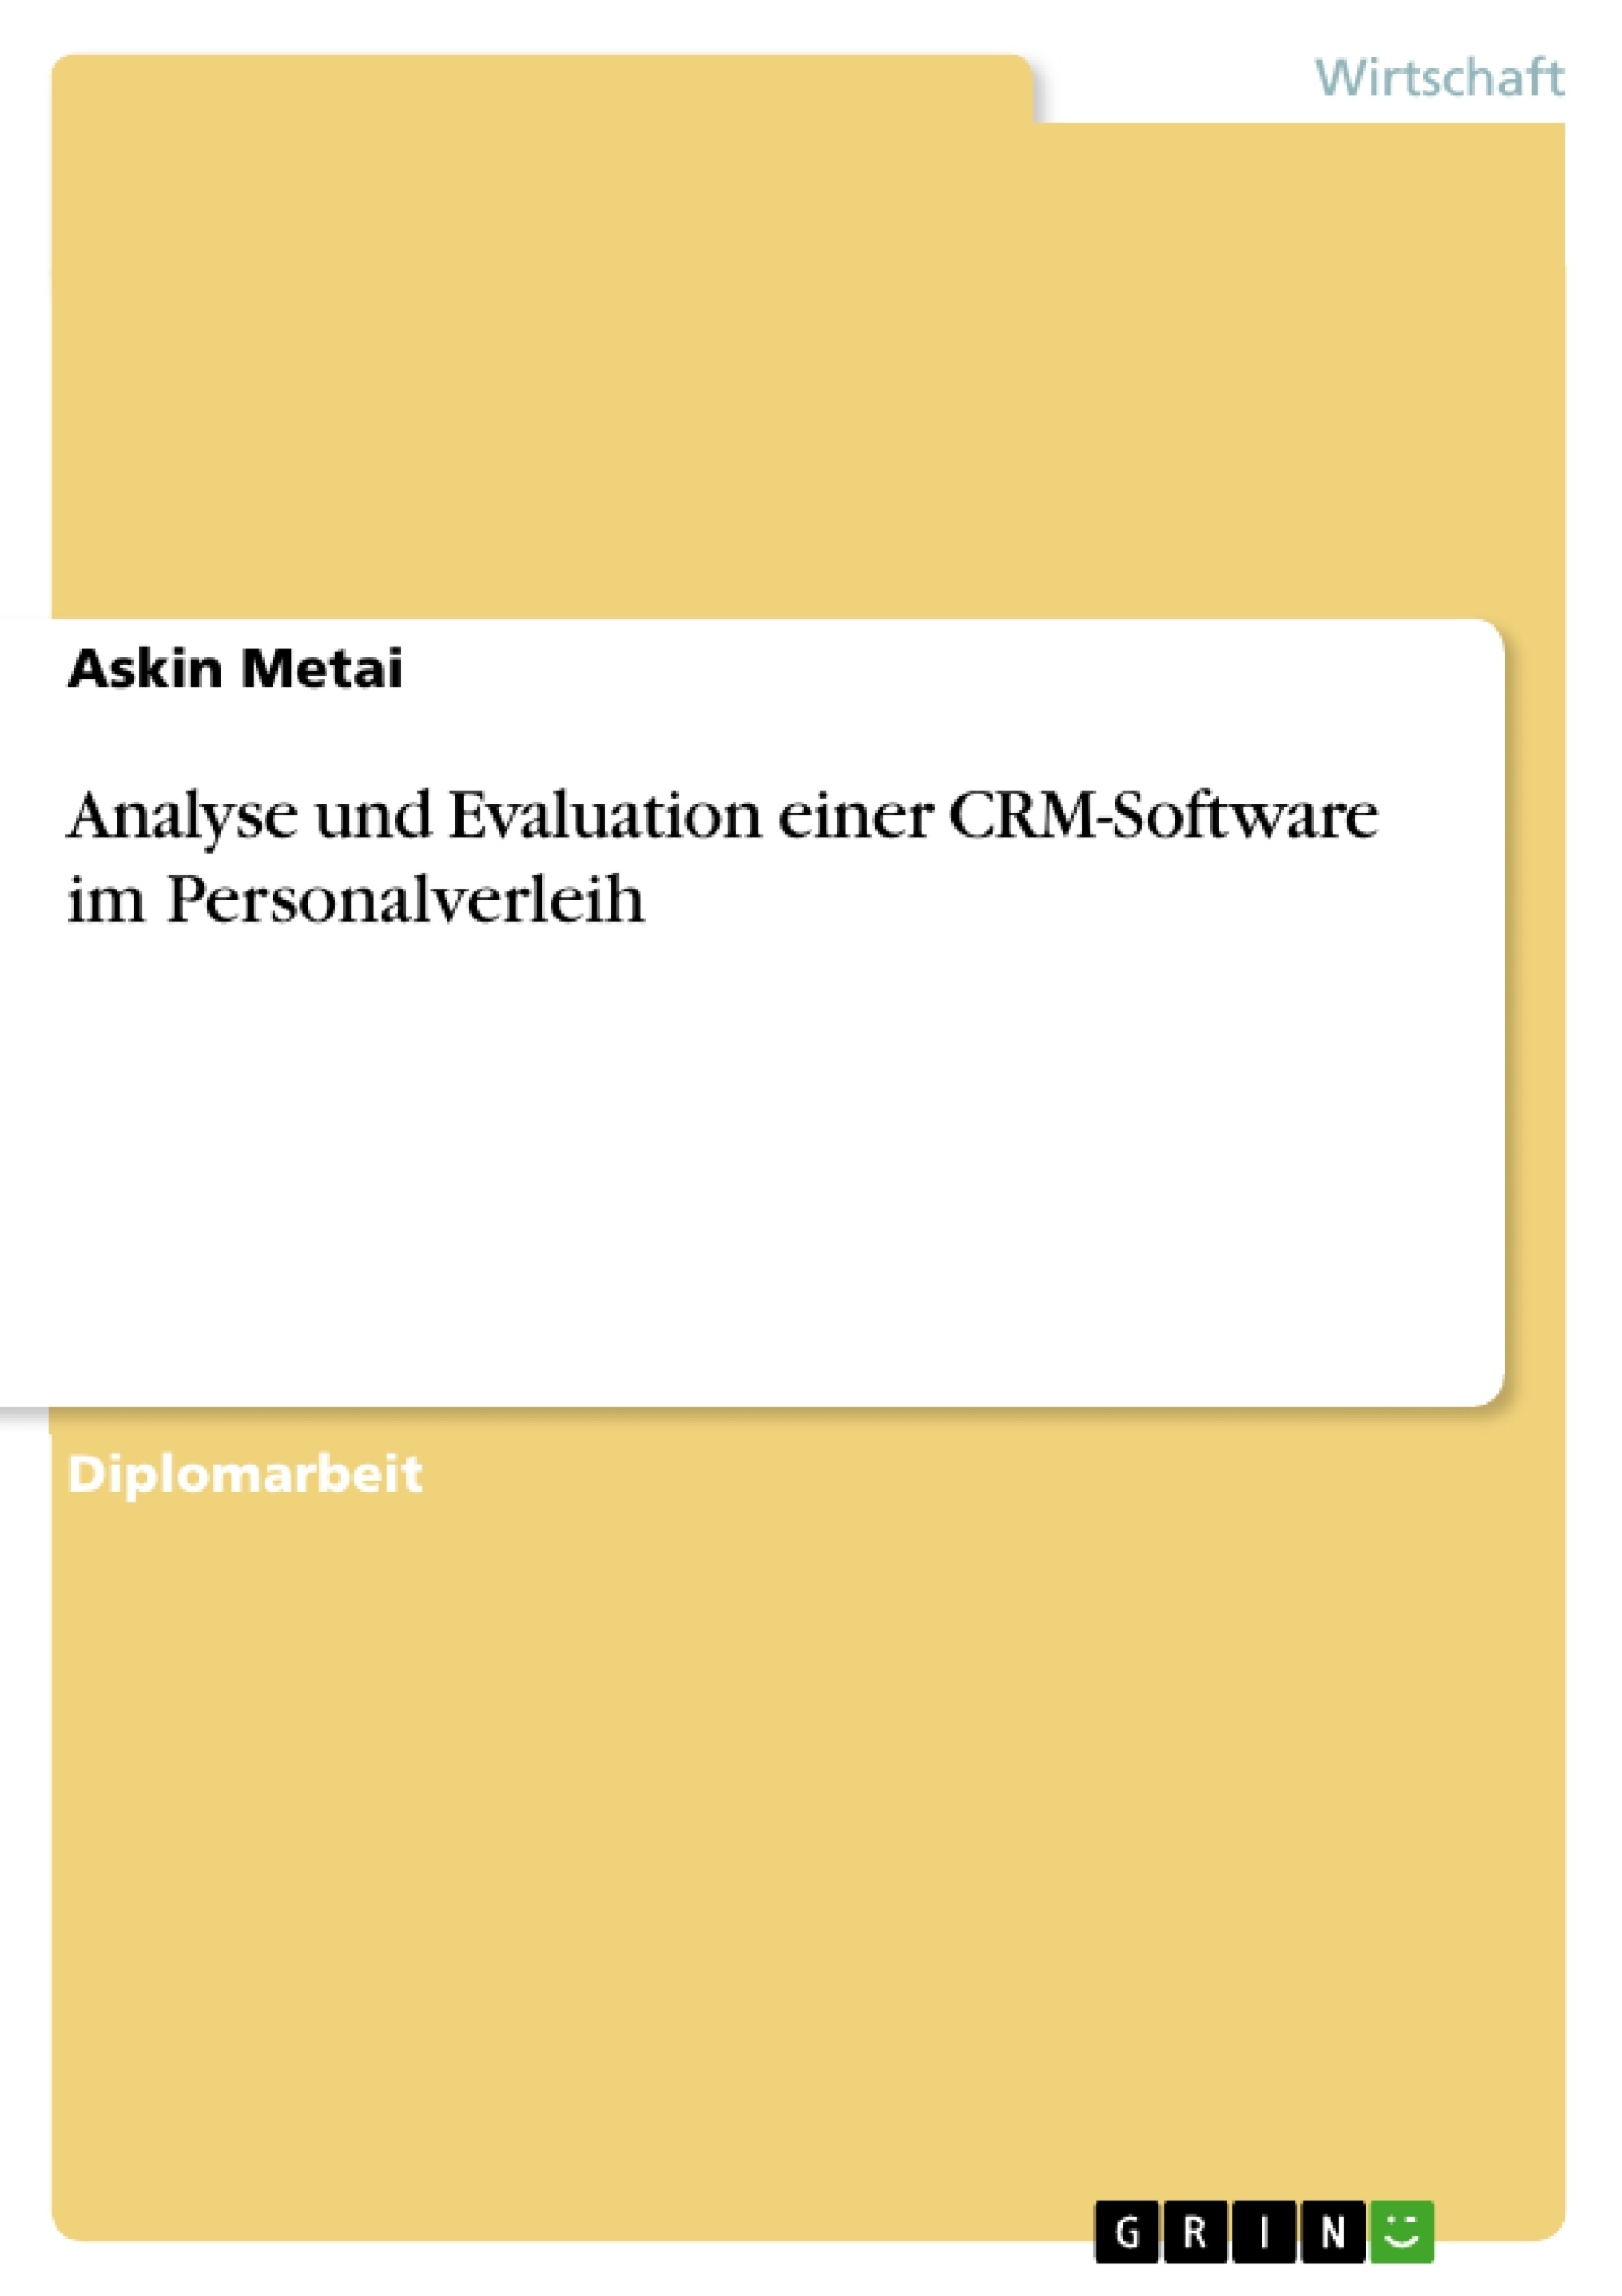 Titre: Analyse und Evaluation einer CRM-Software im Personalverleih